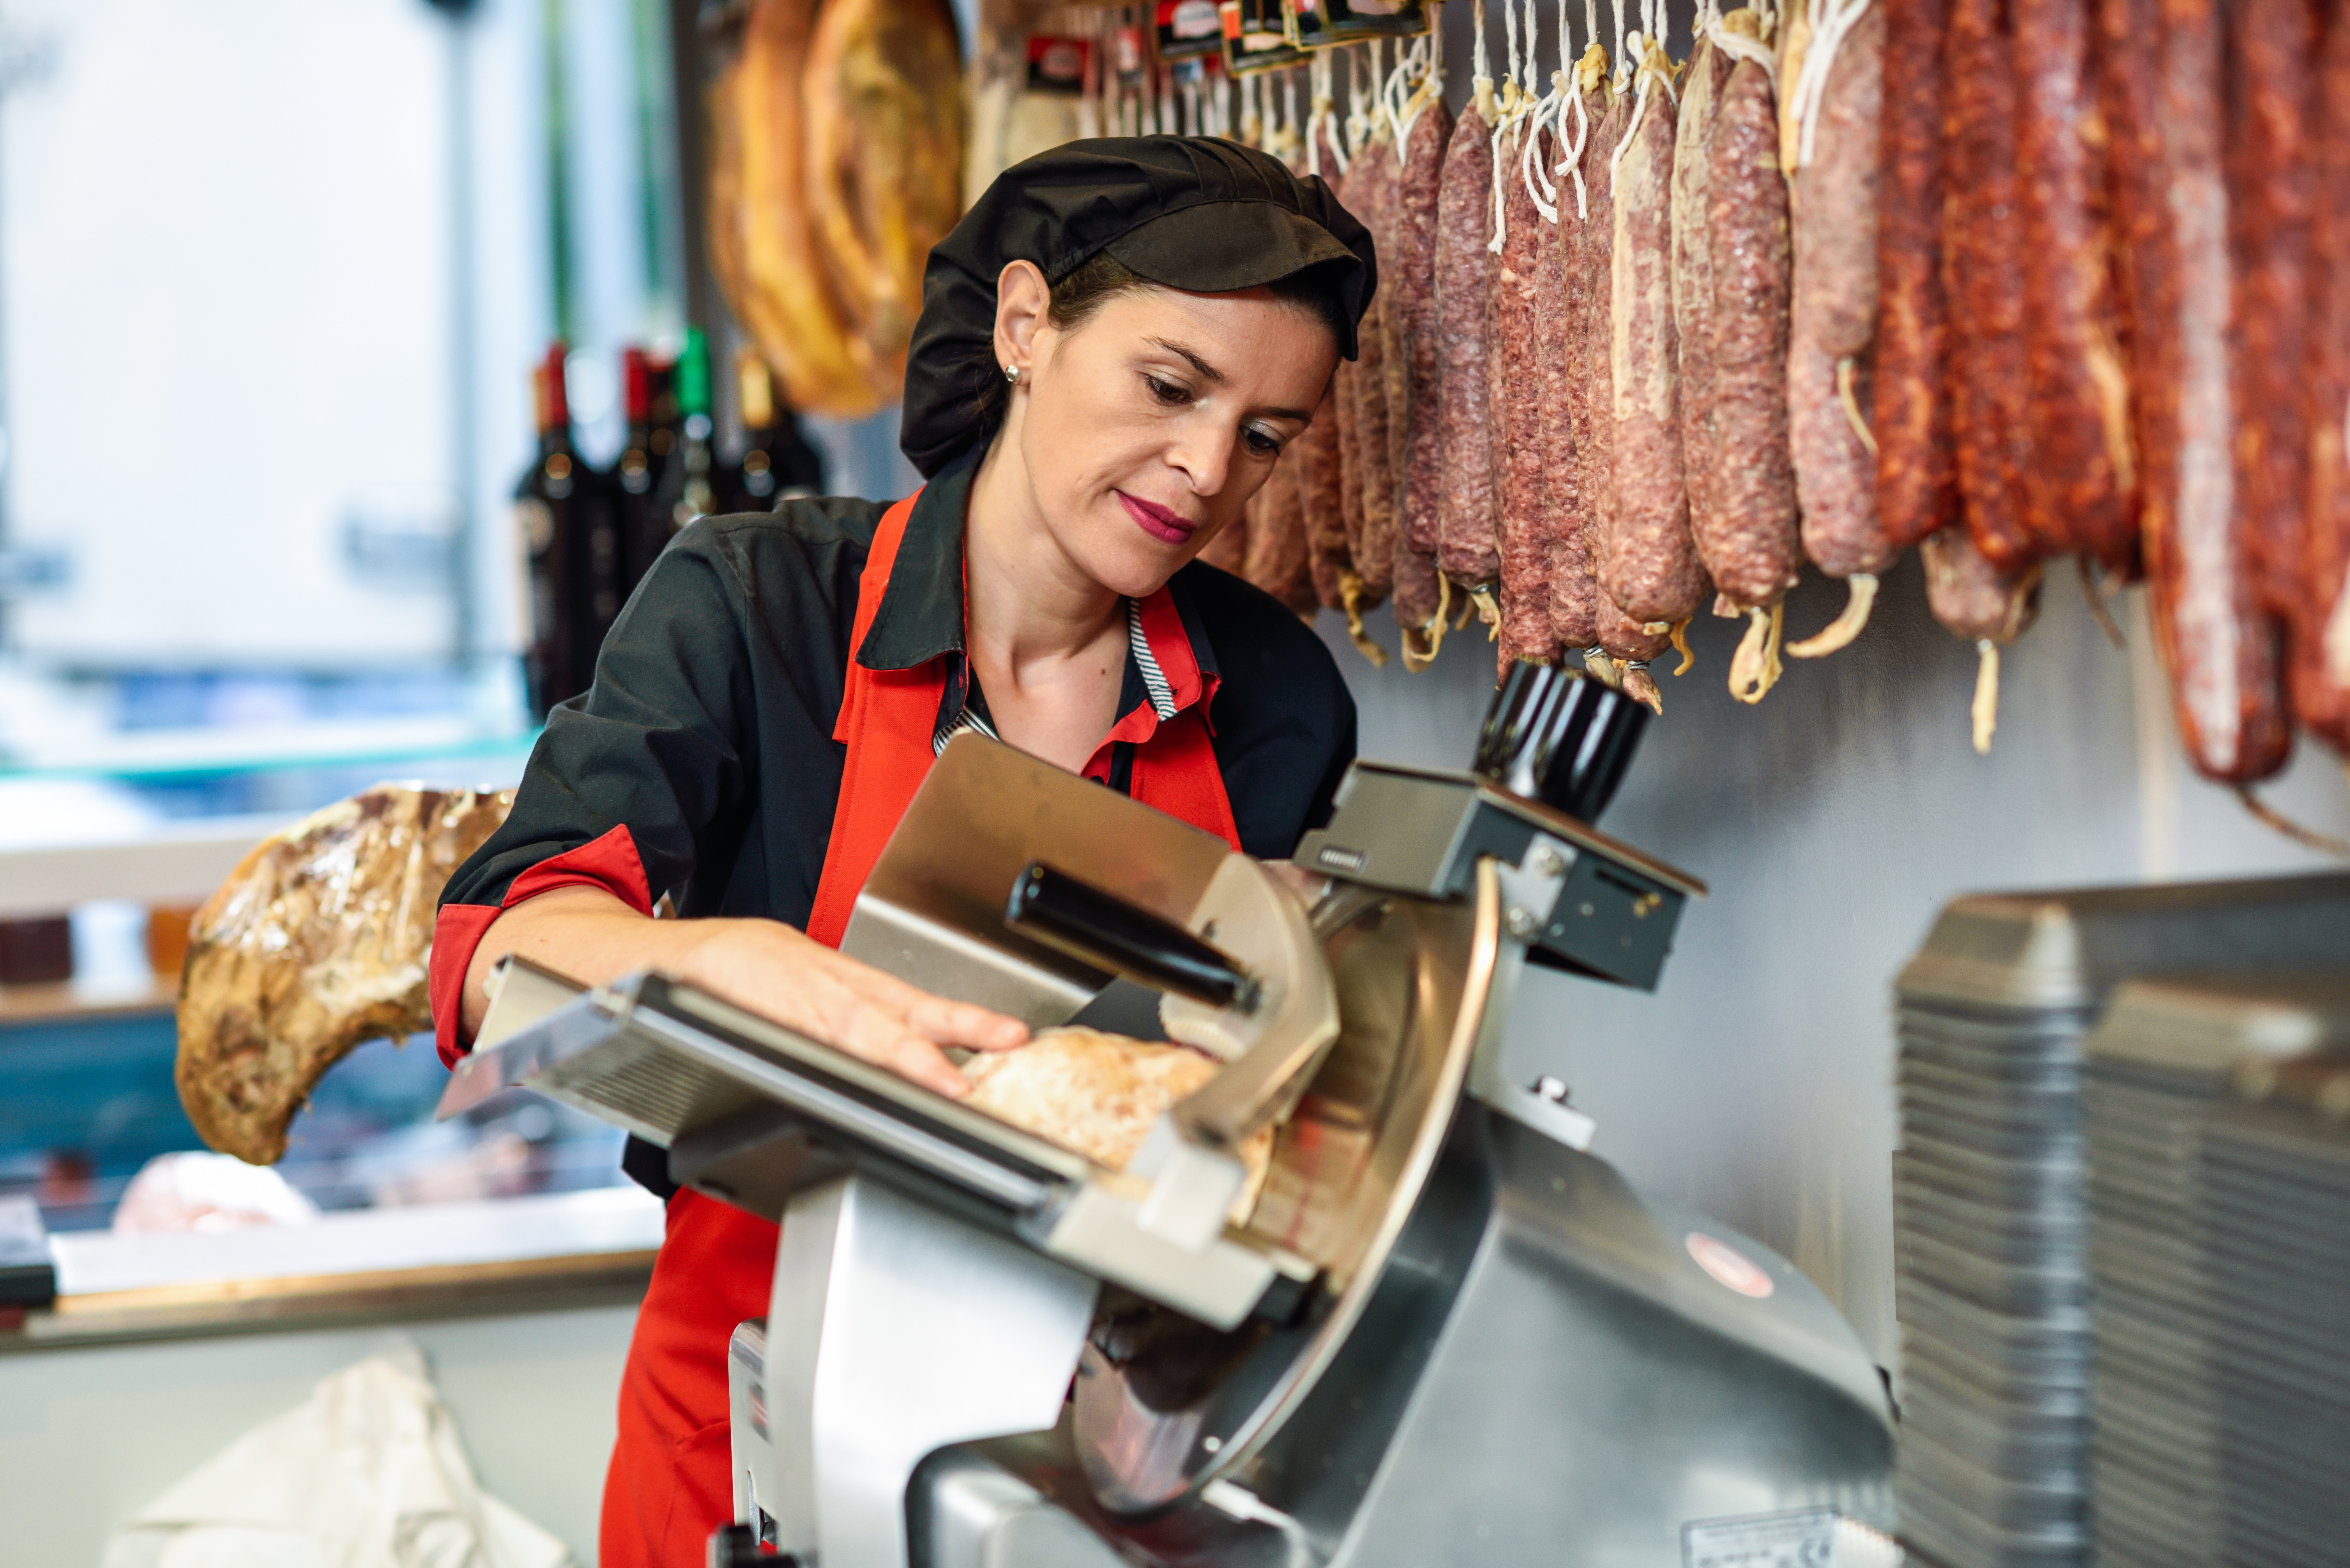 butcher slicing ham in a shop